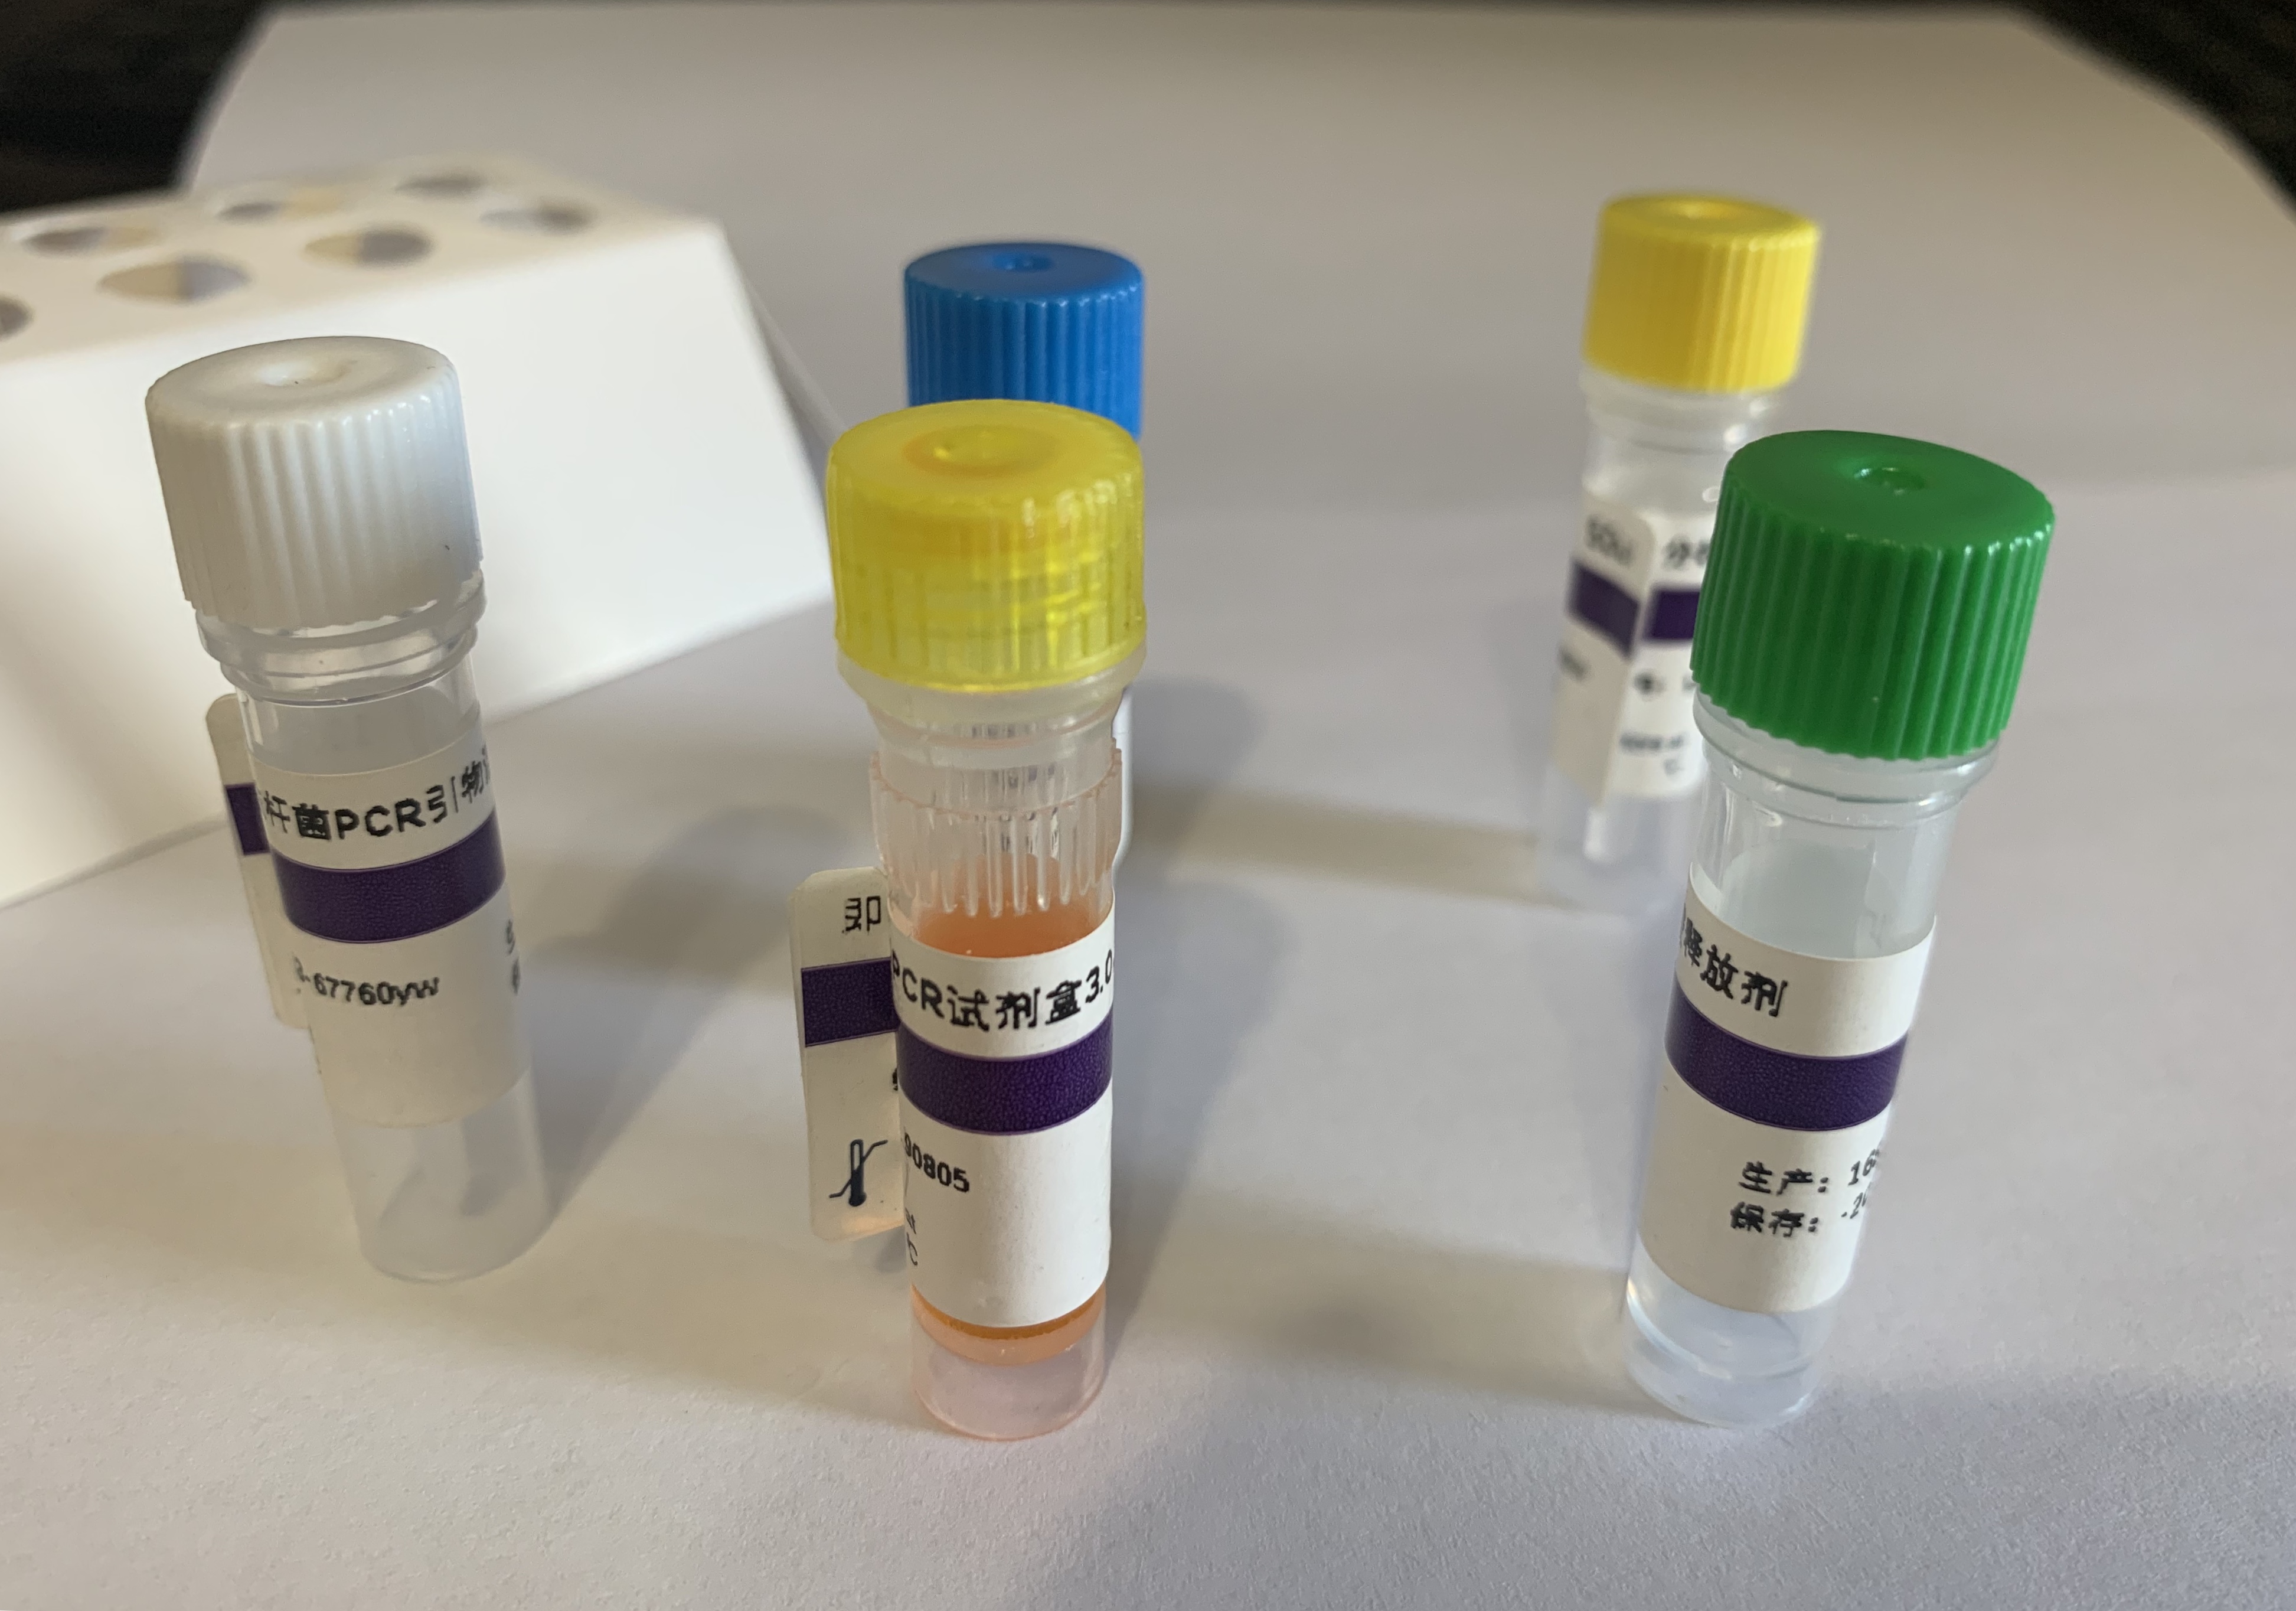 丙型肝炎病毒2型探针法荧光定量RT-PCR试剂盒